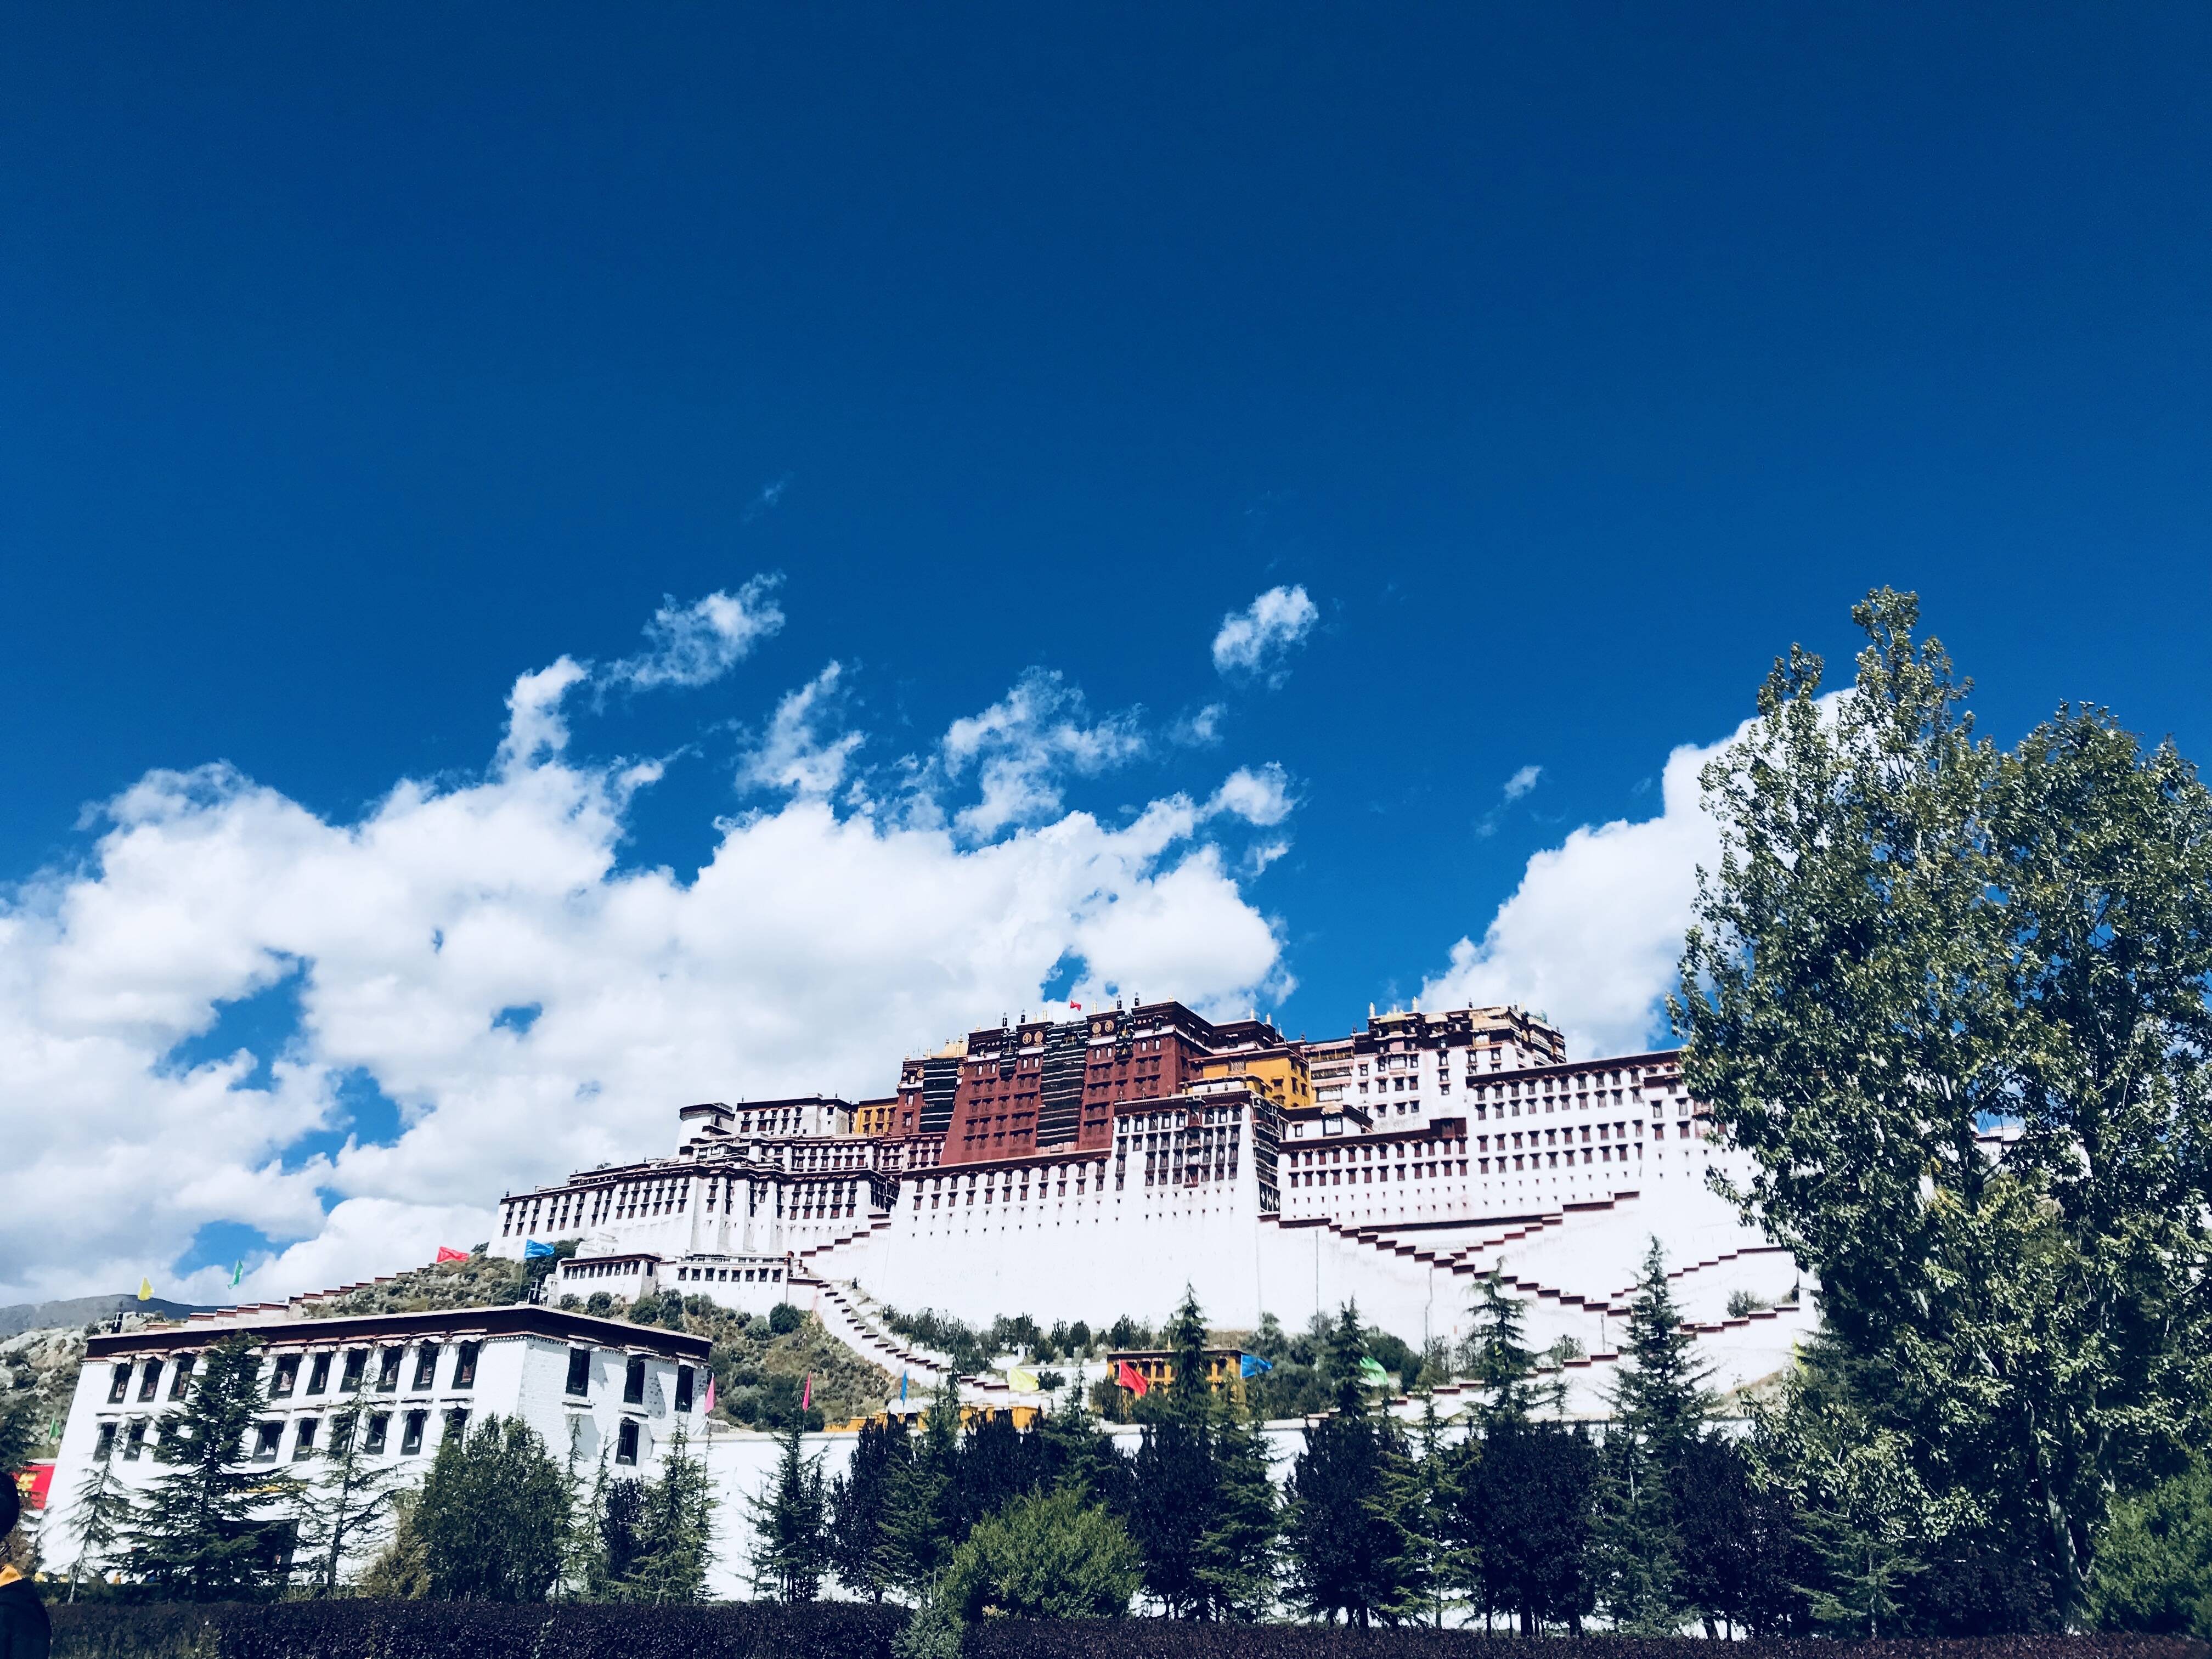 鲁藏空中走廊即将开航 济南国际机场7月18日将开通西藏拉萨客运航线